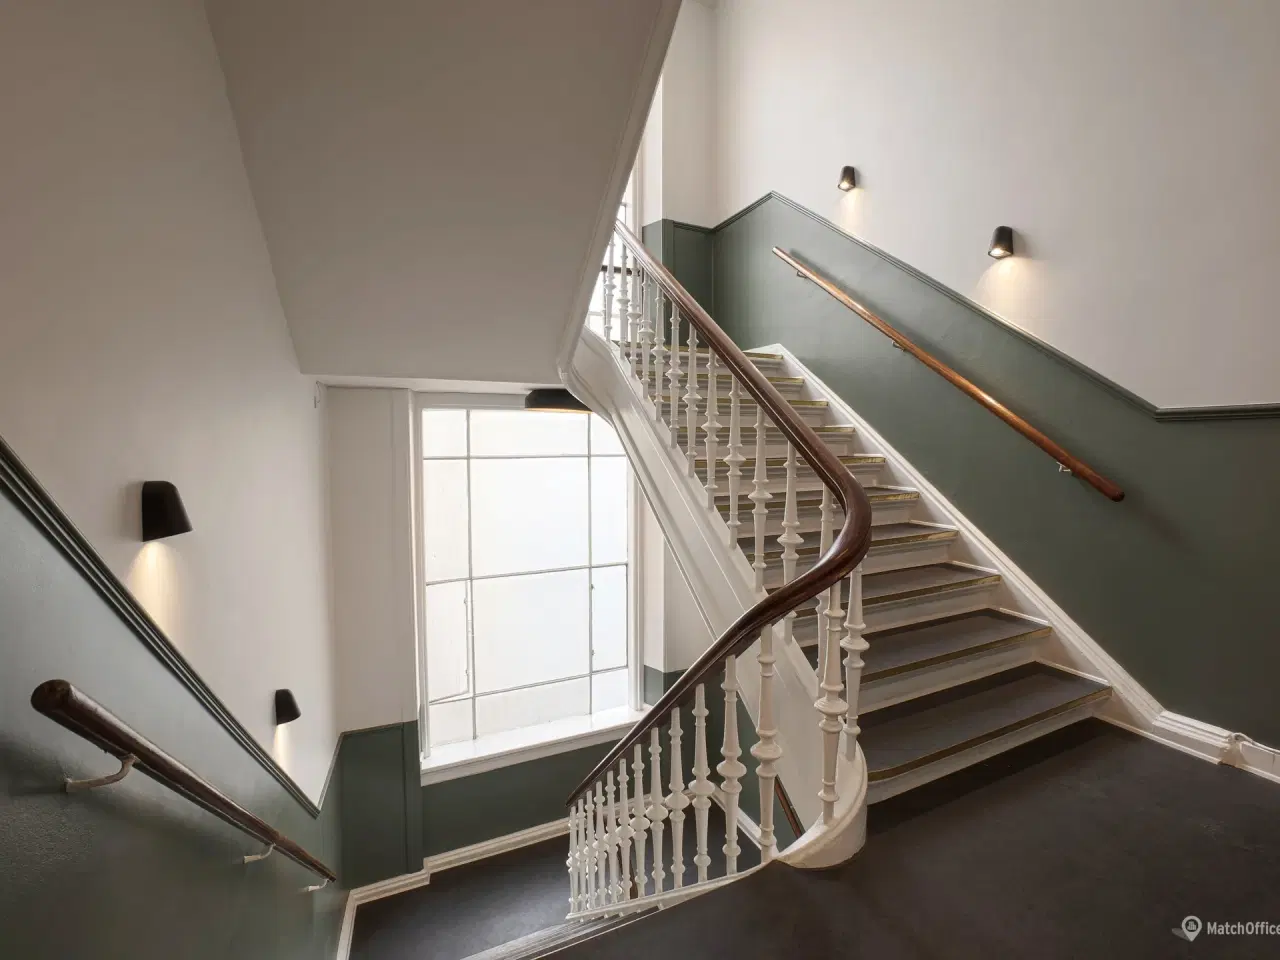 Billede 9 - 399 m2 kontor eller showroom i Københavns charmerende Latinerkvarter